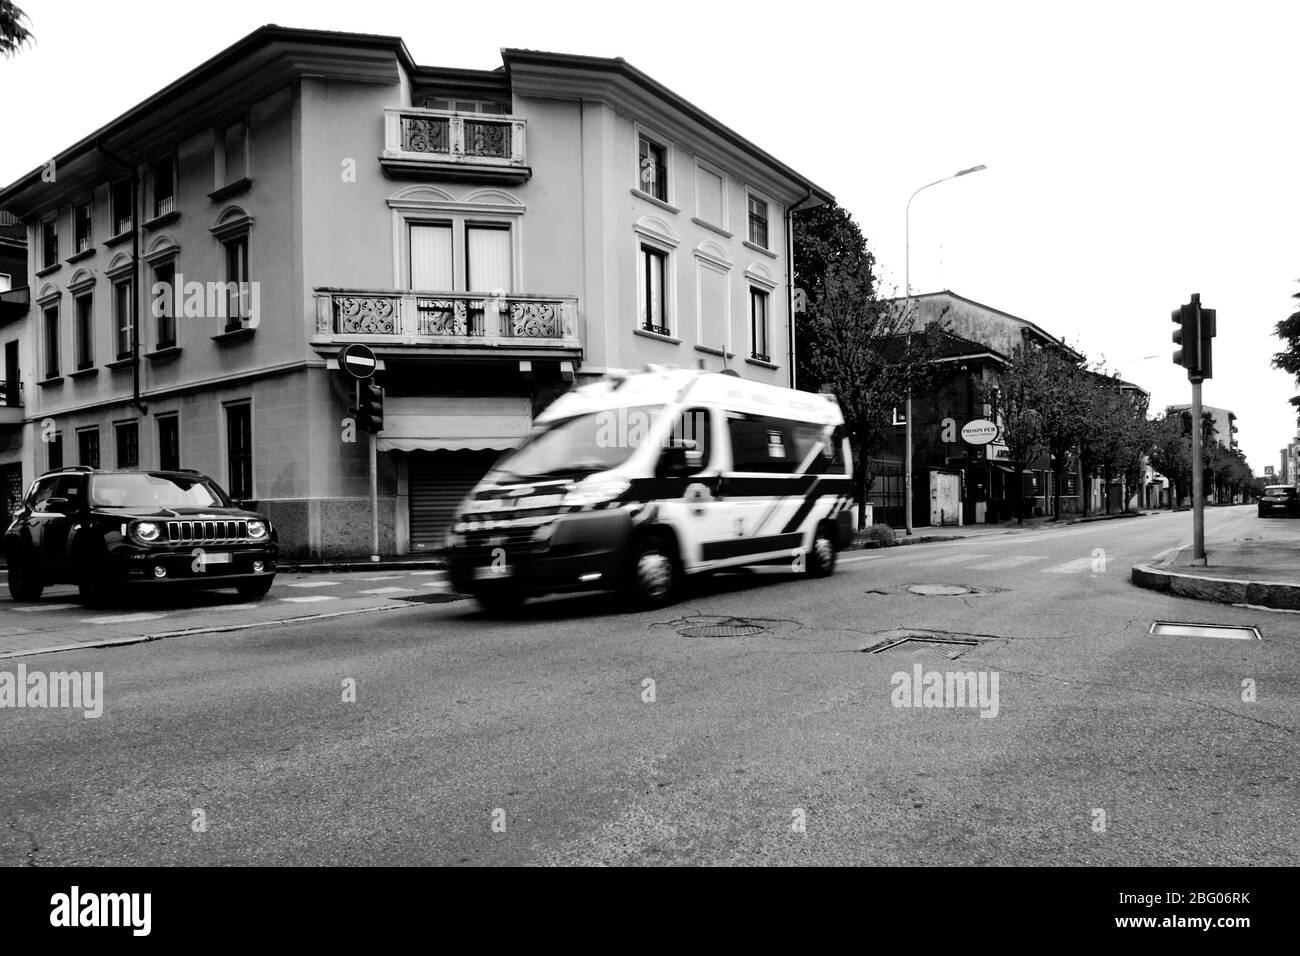 Il silenzio e la desolazione in una città vicino a Milano, domenica mattina, durante Coronavirus. Nelle strade vuote solo l'ambulanza precipitosa per aiutare le persone Foto Stock